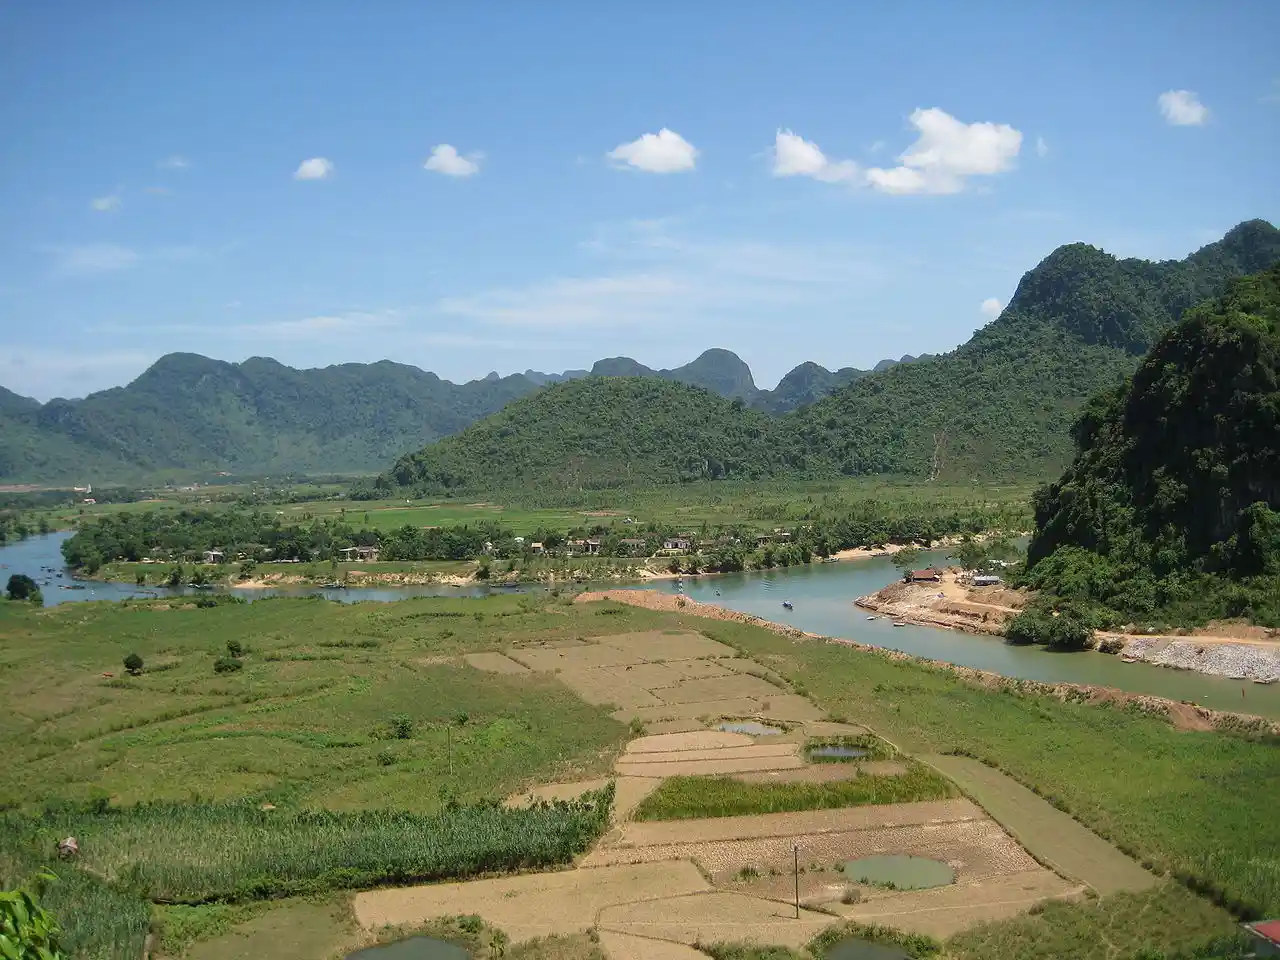 Activista ambiental condenada a tres años de prisión en Vietnam. Phong Nha-Ke Bang National Park, Vietnam / Foto: Wikipedia